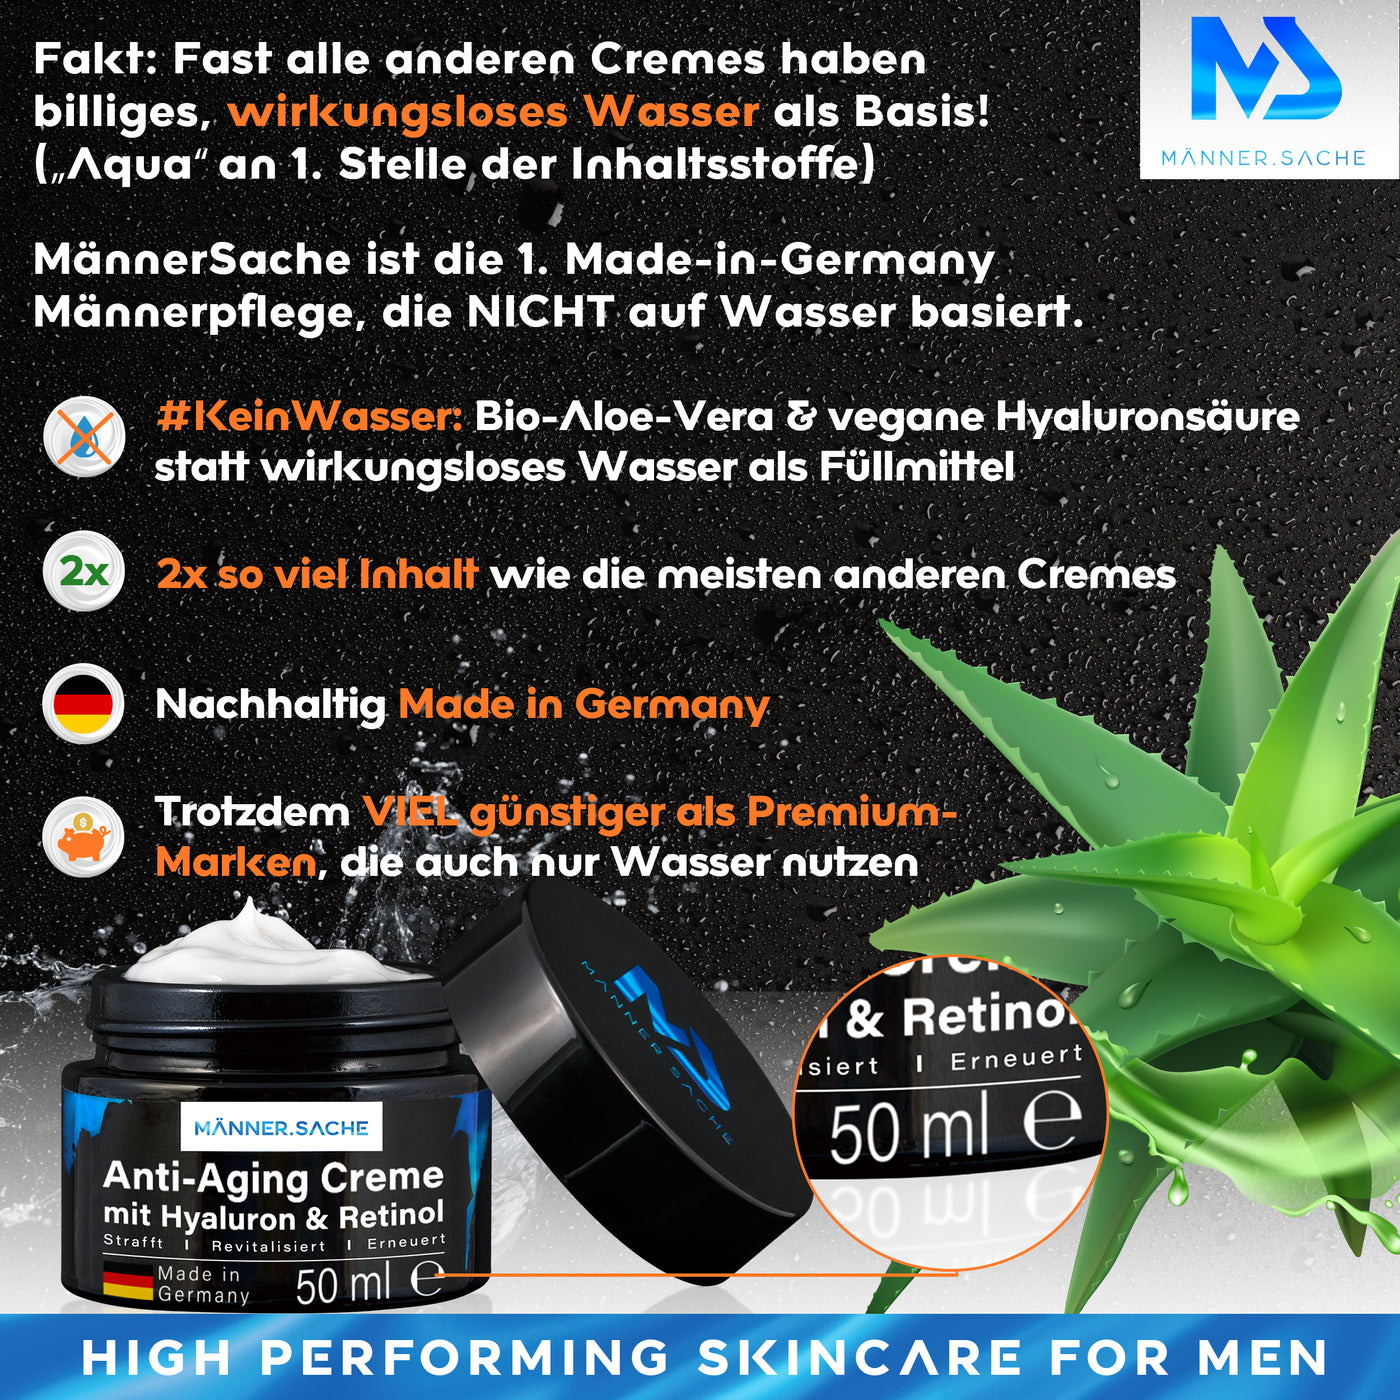 MännerSache Bio-Aloe-Vera Anti-Aging Creme & Antifalten für Männer 50ml